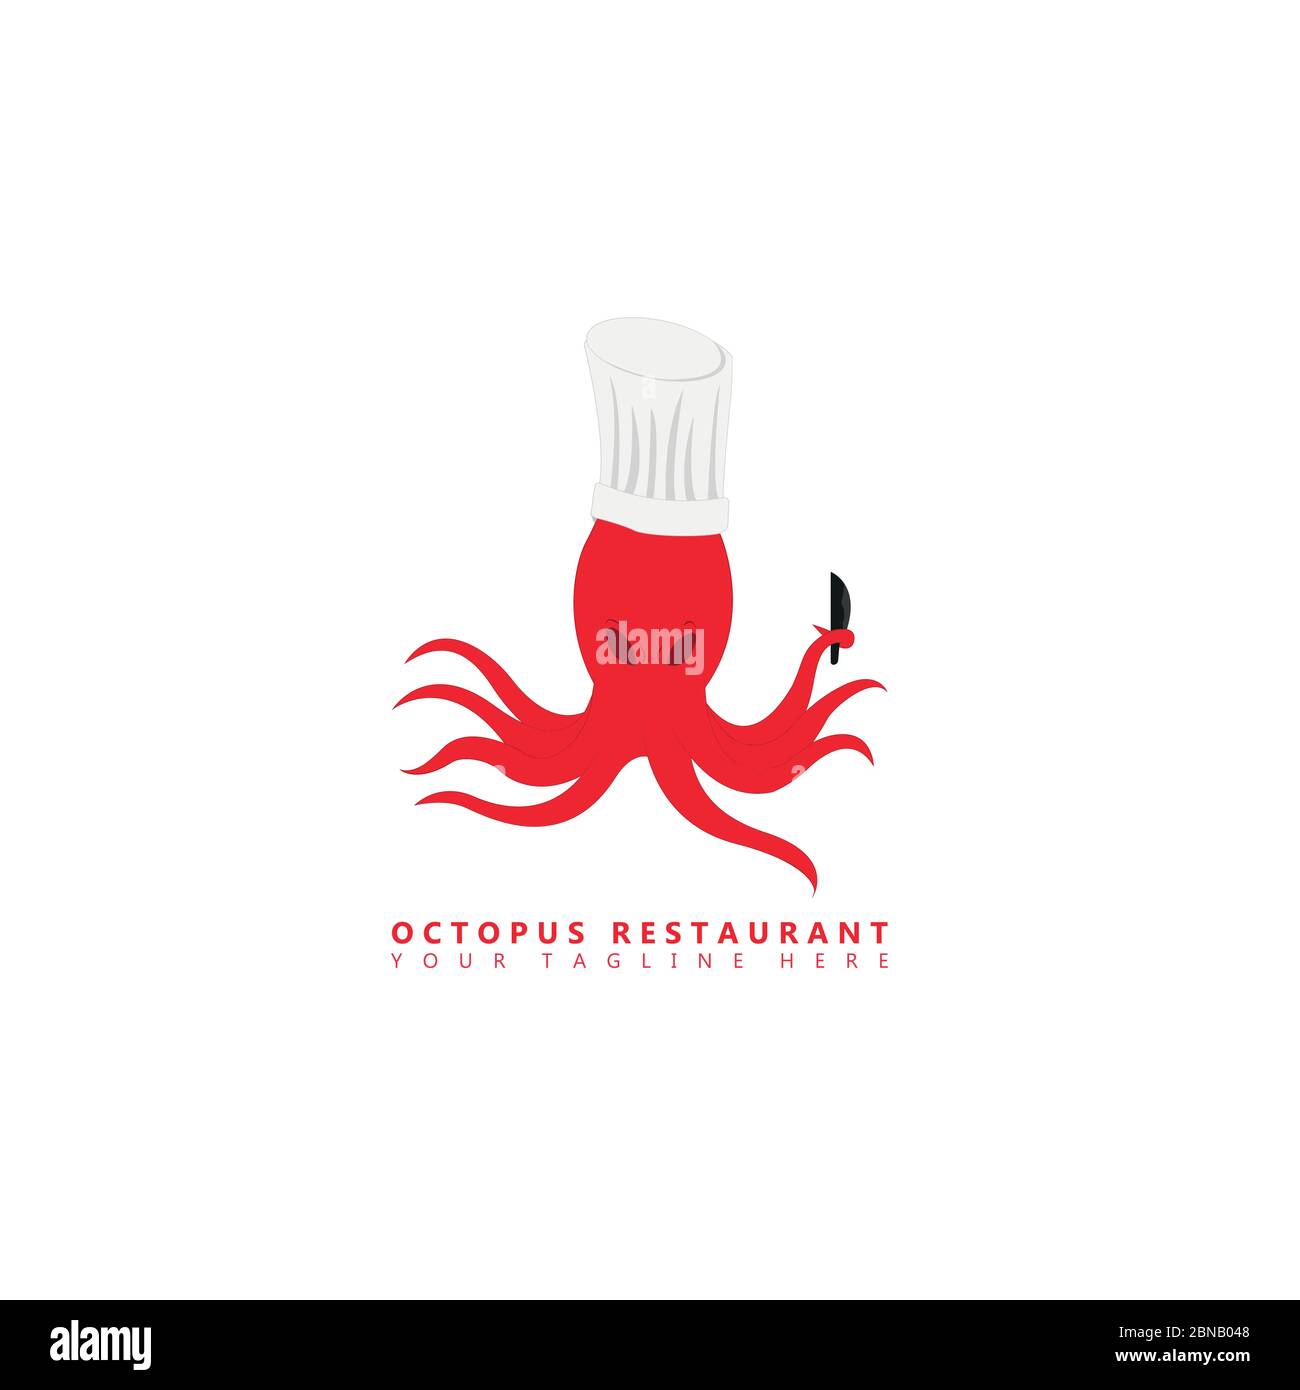 C'est une image d'un logo de mascotte de poulpe qui porte un chapeau de chef et tient un couteau de cuisine dans ses tentacules. Ce logo est adapté à une utilisation dans les toilettes Illustration de Vecteur